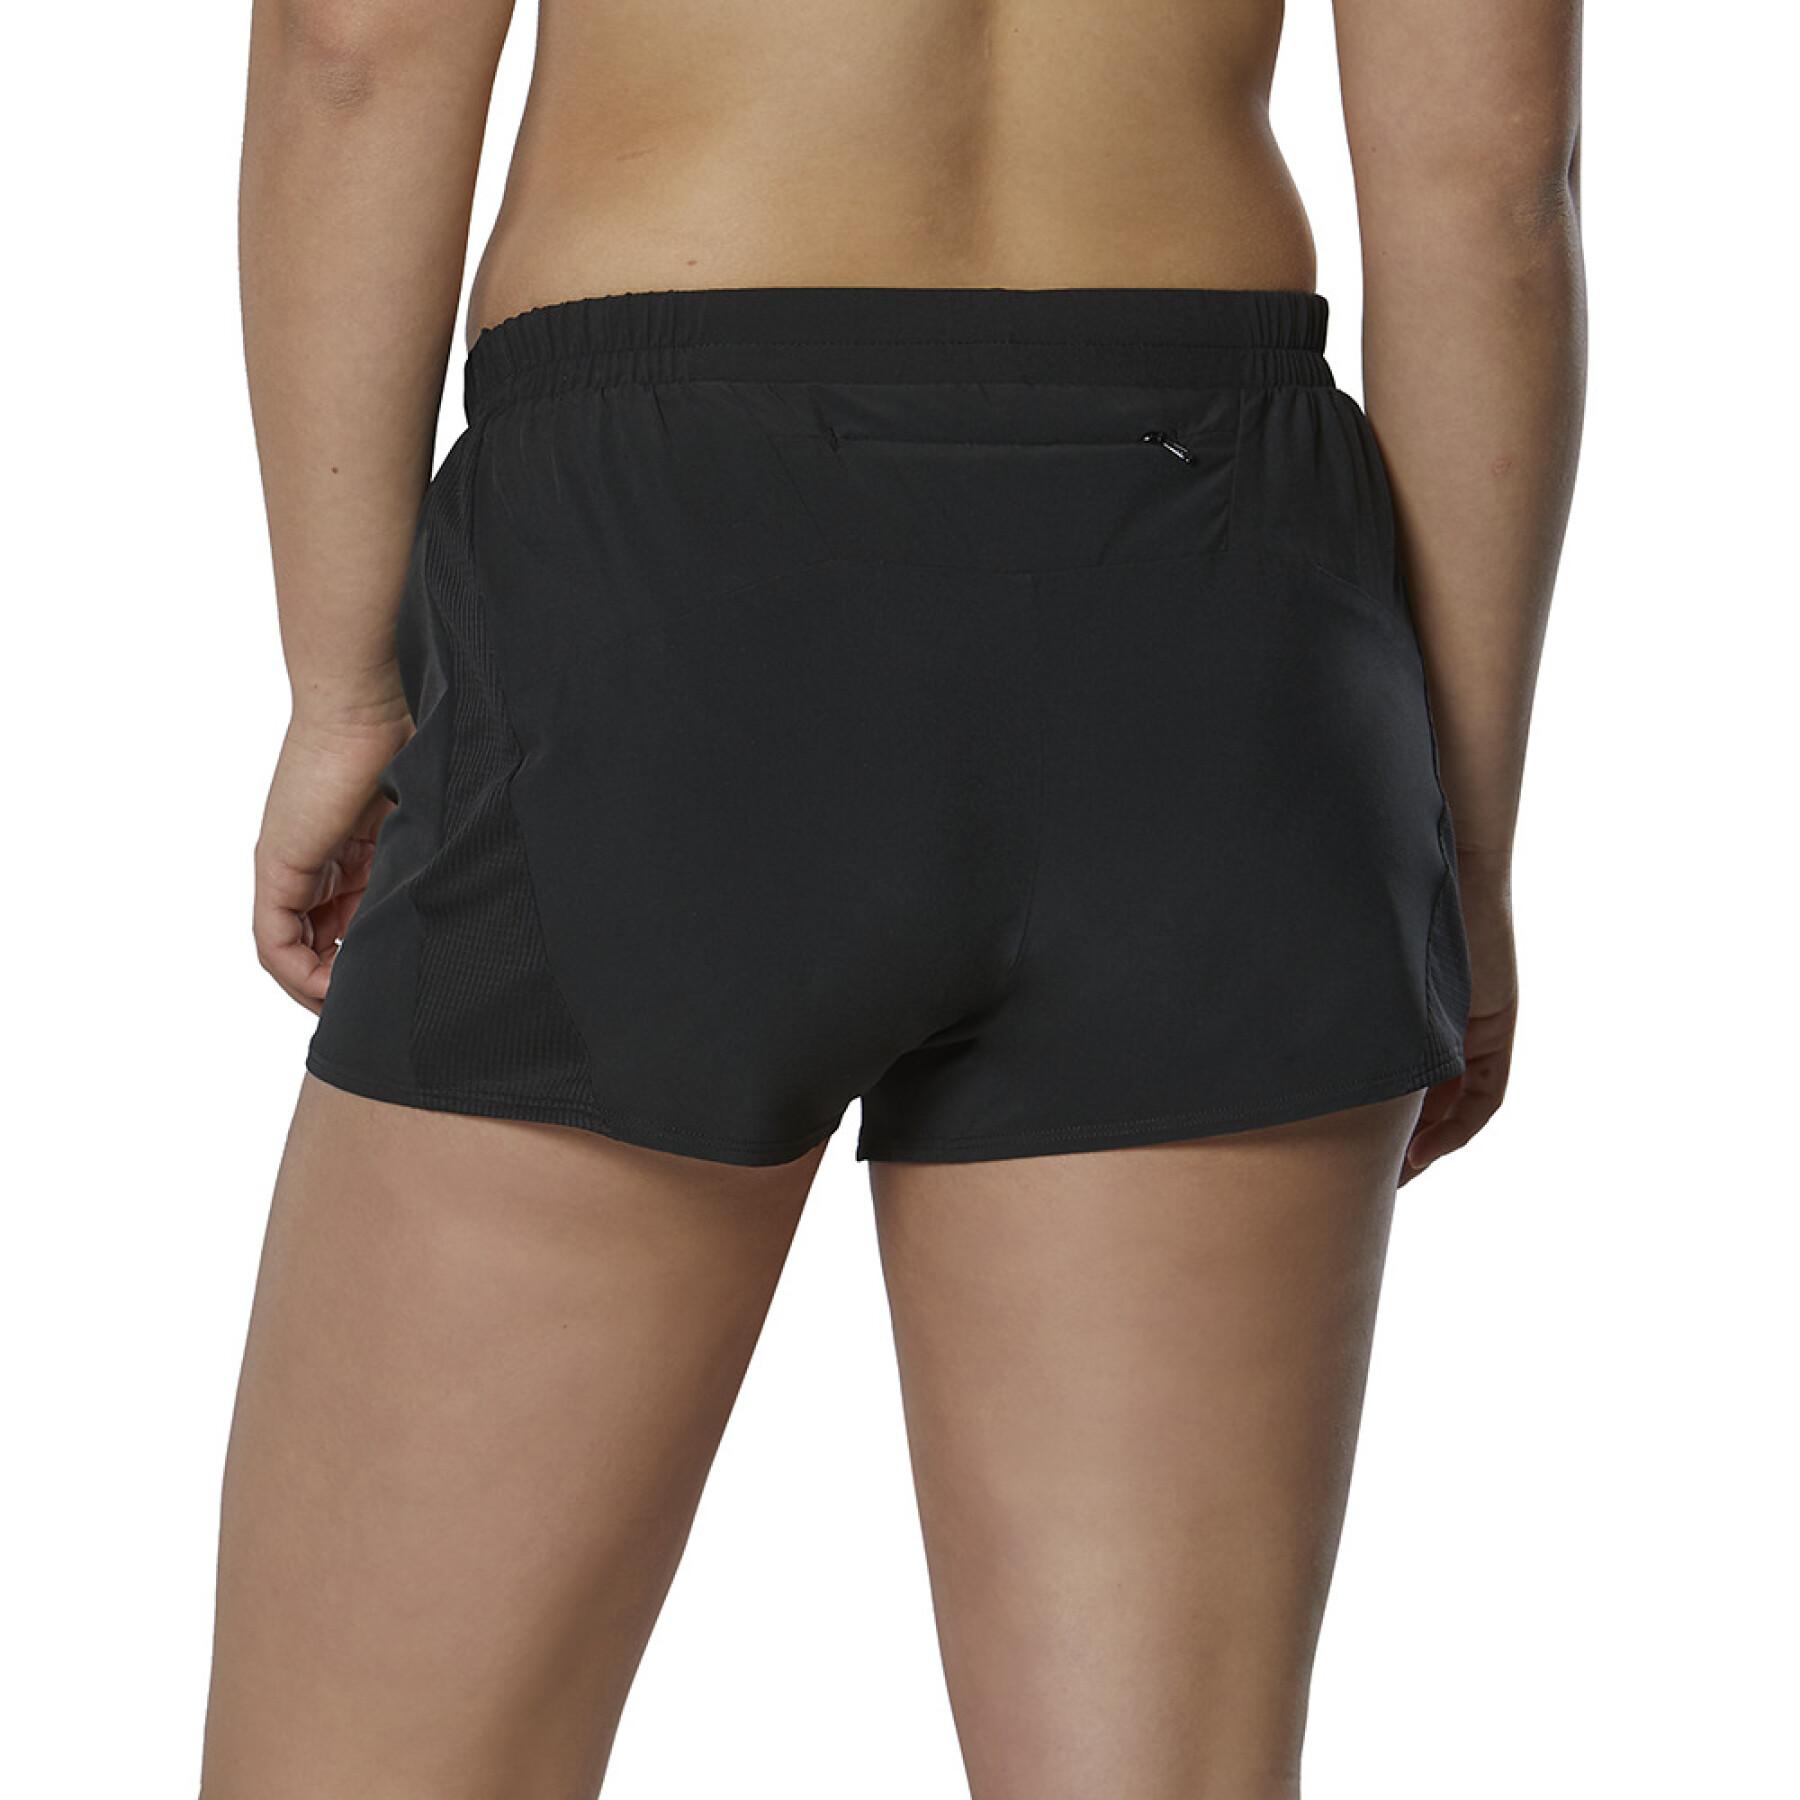 Women's shorts Mizuno Aero 2.5